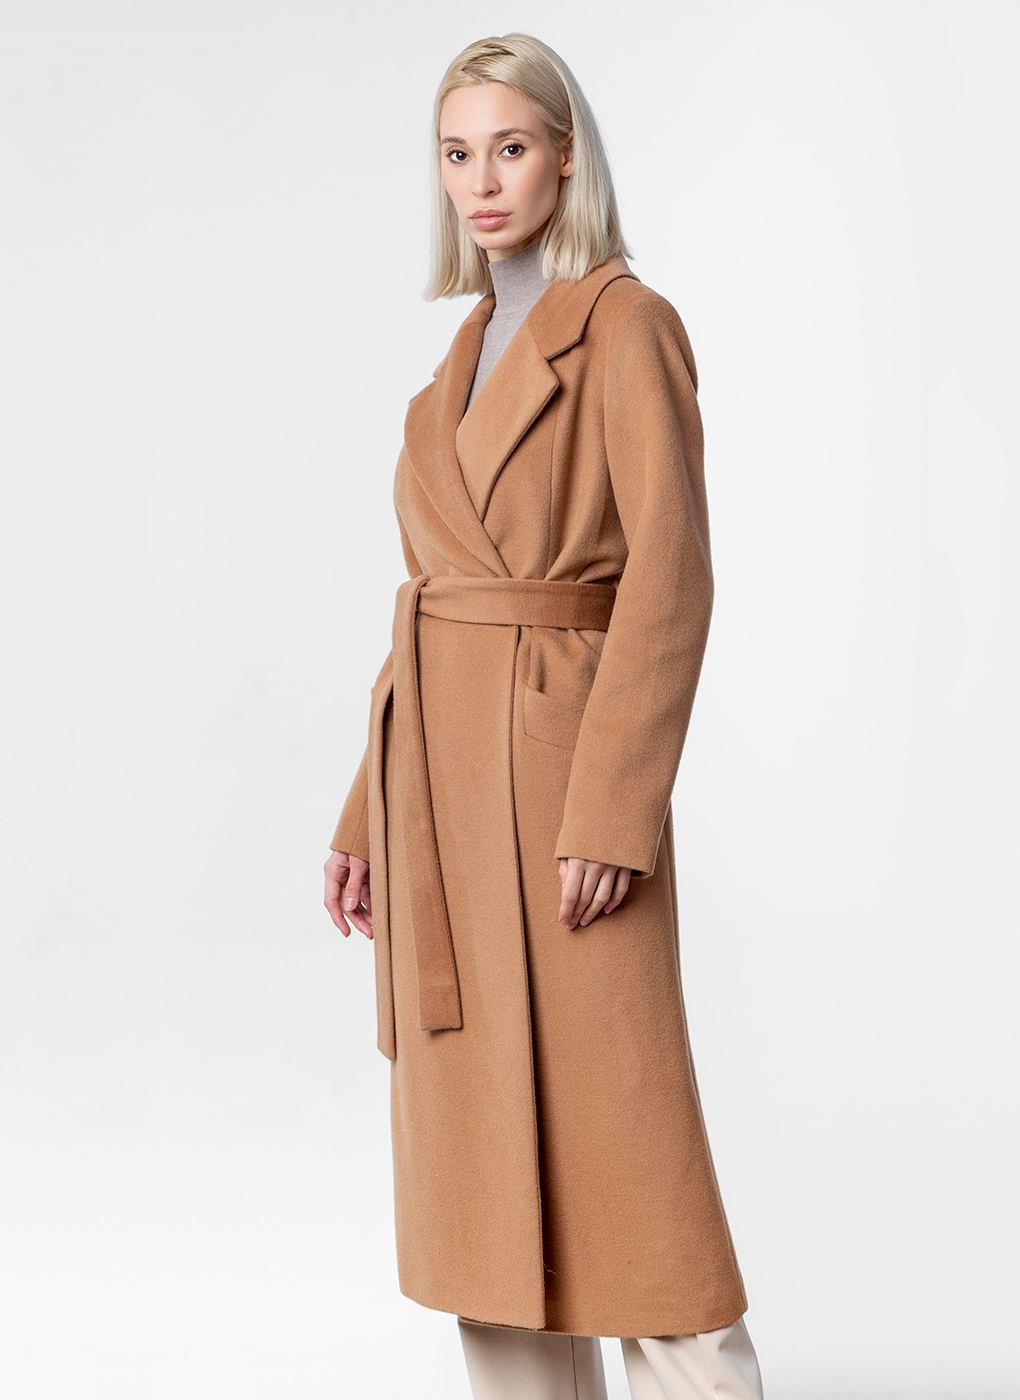 Пальто женское Каляев 59831 коричневое 44 RU